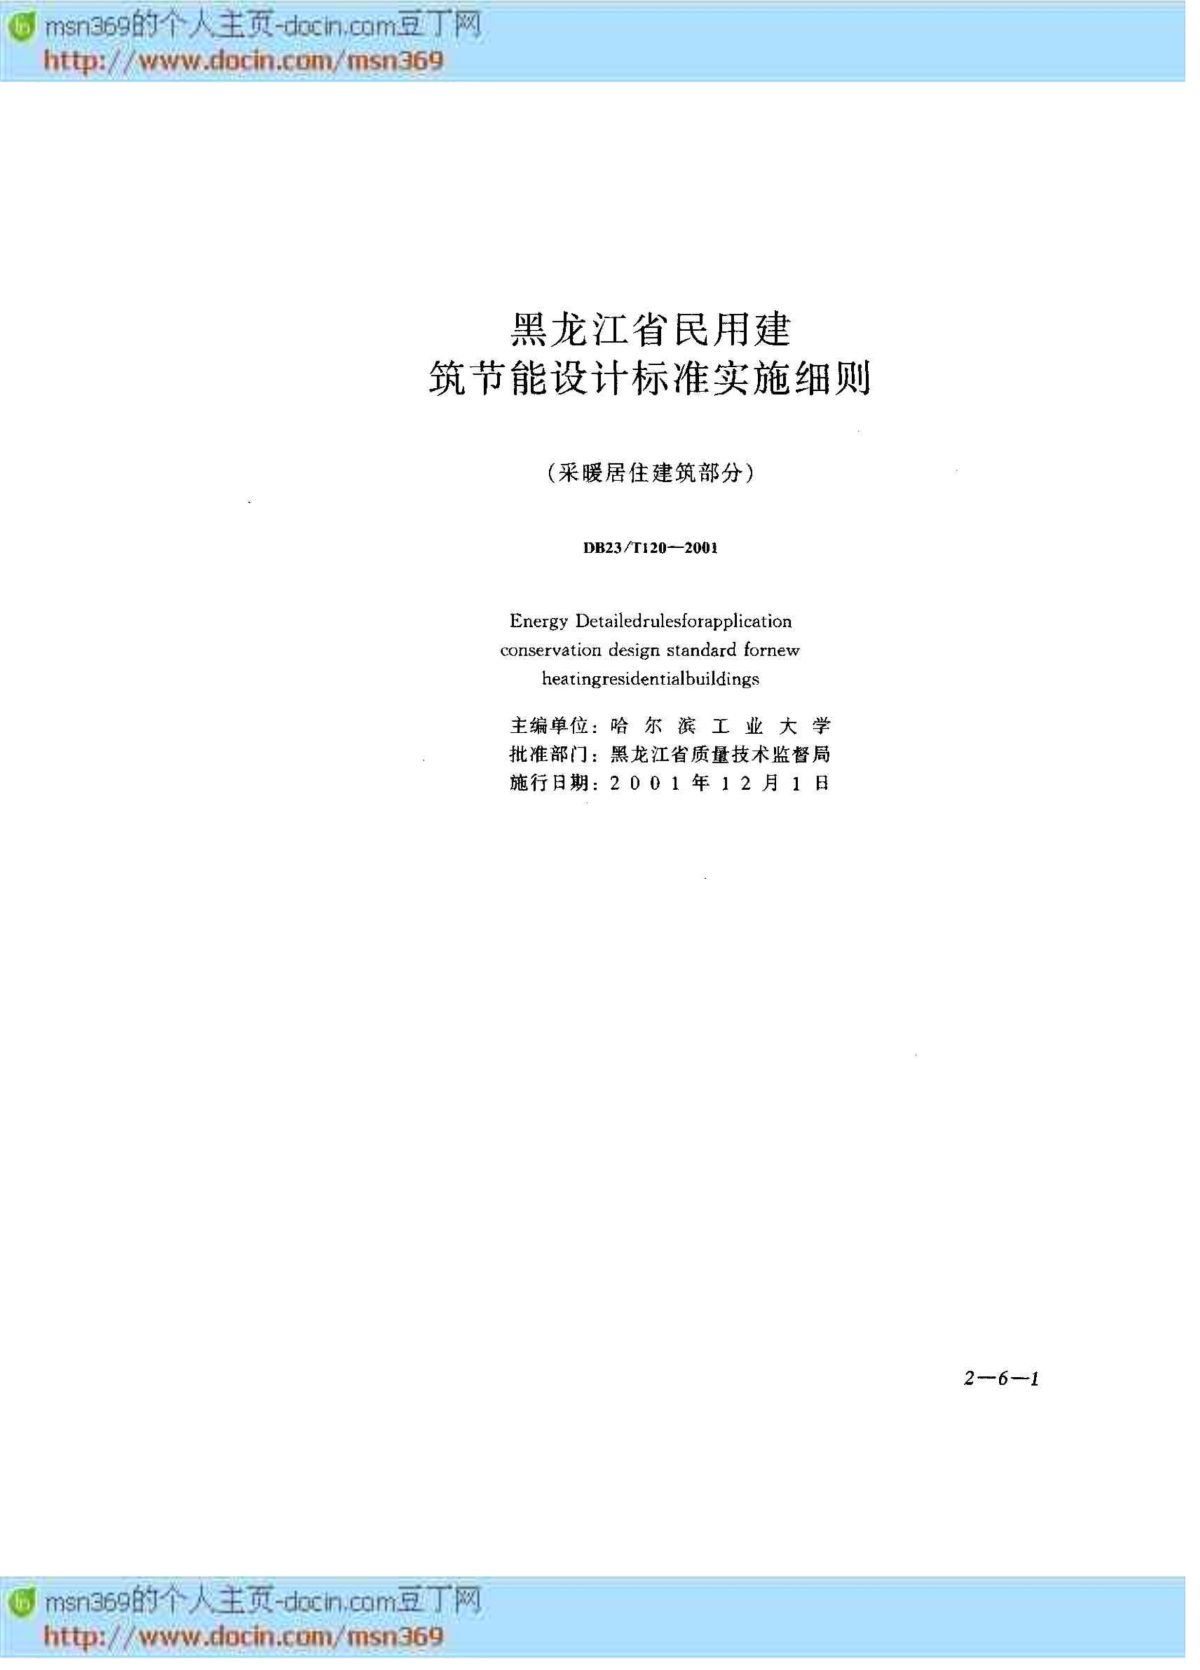 标准大全DB23 T 120-2001 黑龙江省民用建筑节能设计标准实施细则(采暖居住建筑部分)-图二